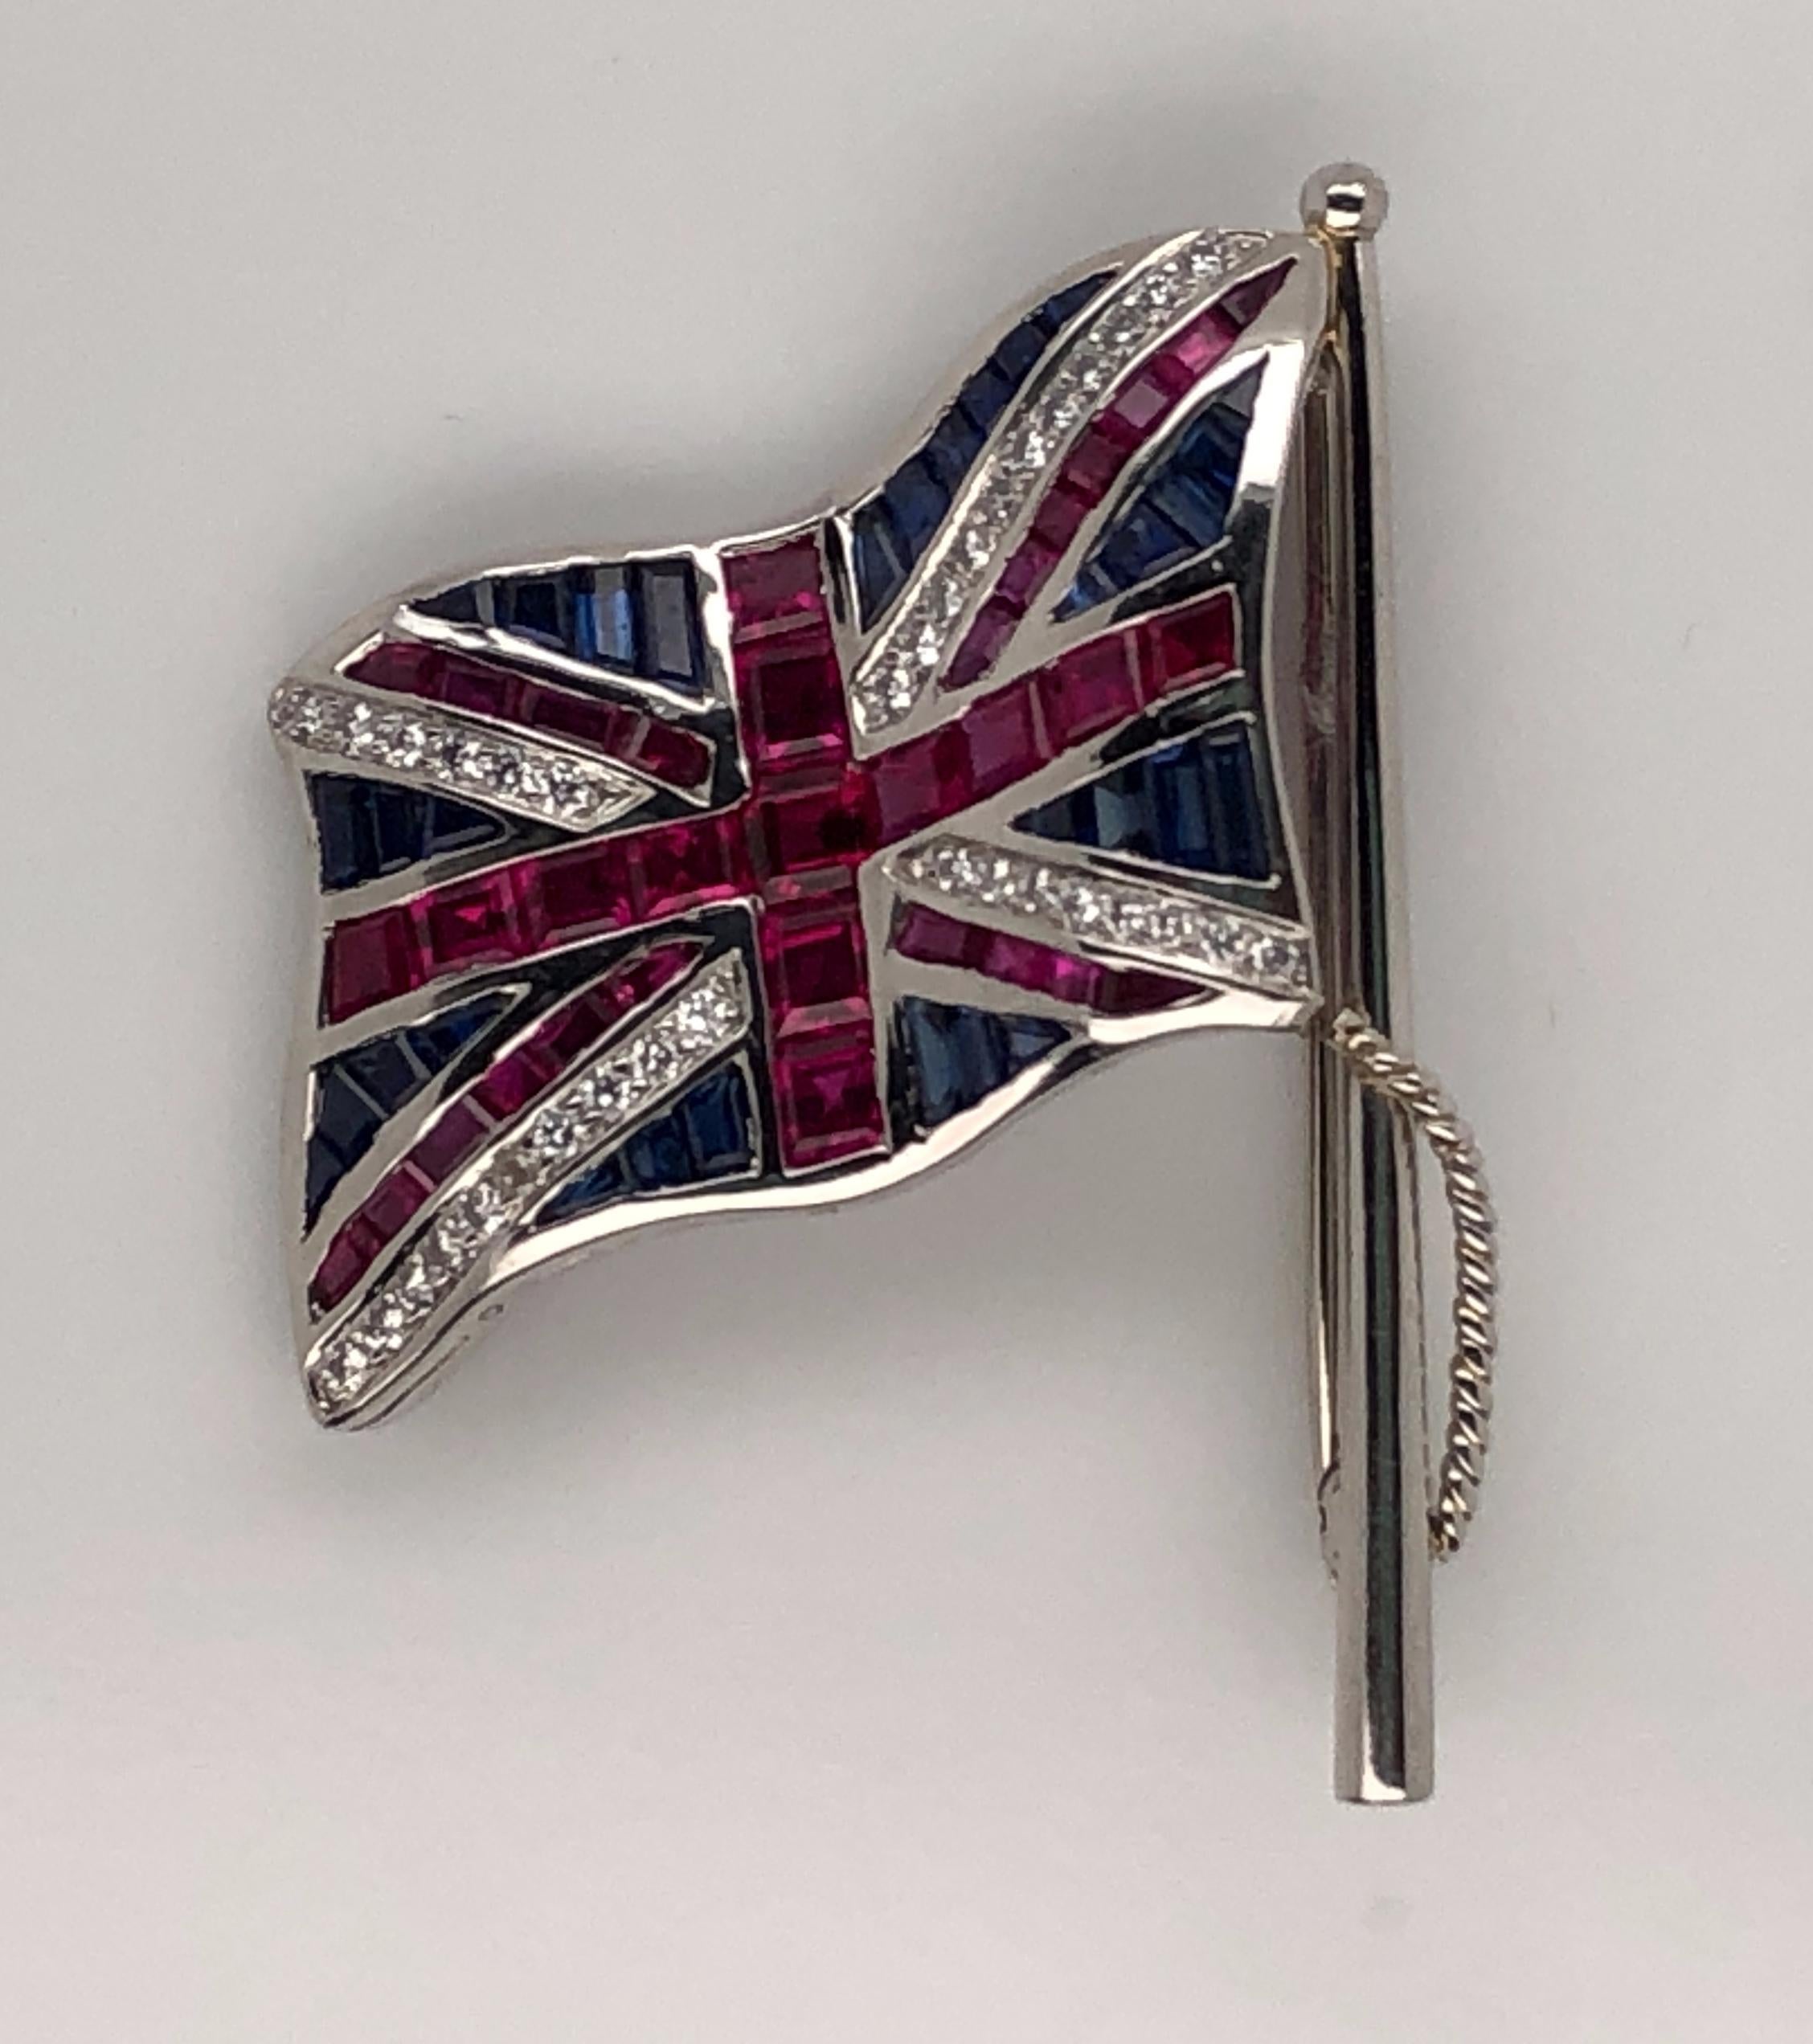 La broche drapeau Union Jack en platine d'Oscar Heyman contient des rubis (2,63 ct), des saphirs (1,59 ct) et des diamants (0,33 ct). Il porte la marque du fabricant, IRID PLAT, et le numéro de série 200826.

La hampe du drapeau mesure 38 mm de